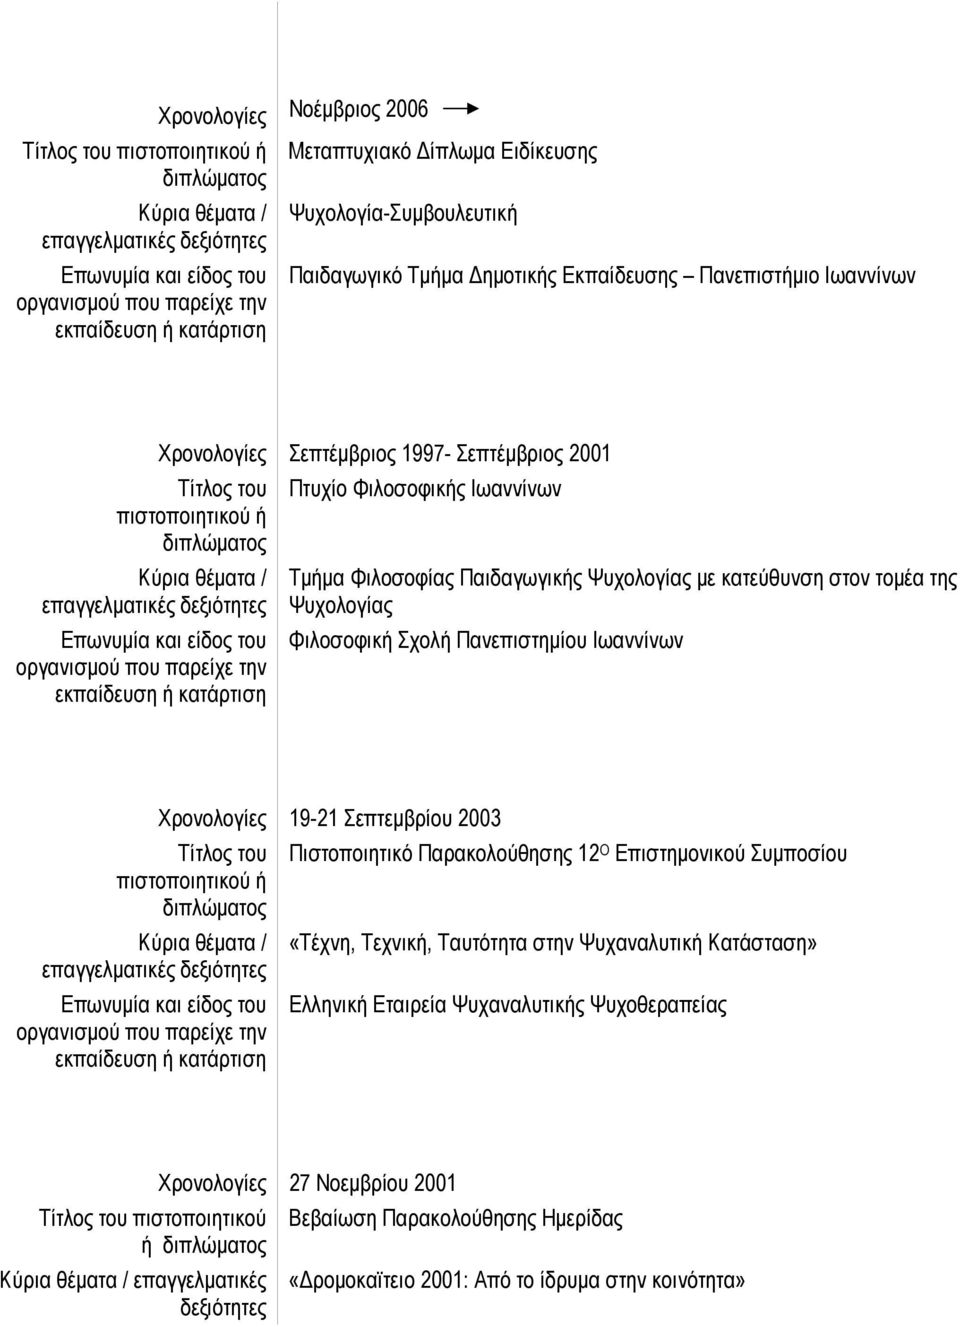 Ιωαννίνων Χρονολογίες 19-21 Σεπτεµβρίου 2003 Τίτλος του πιστοποιητικού ή Πιστοποιητικό Παρακολούθησης 12 Ο Επιστηµονικού Συµποσίου «Τέχνη, Τεχνική, Ταυτότητα στην Ψυχαναλυτική Κατάσταση» Ελληνική